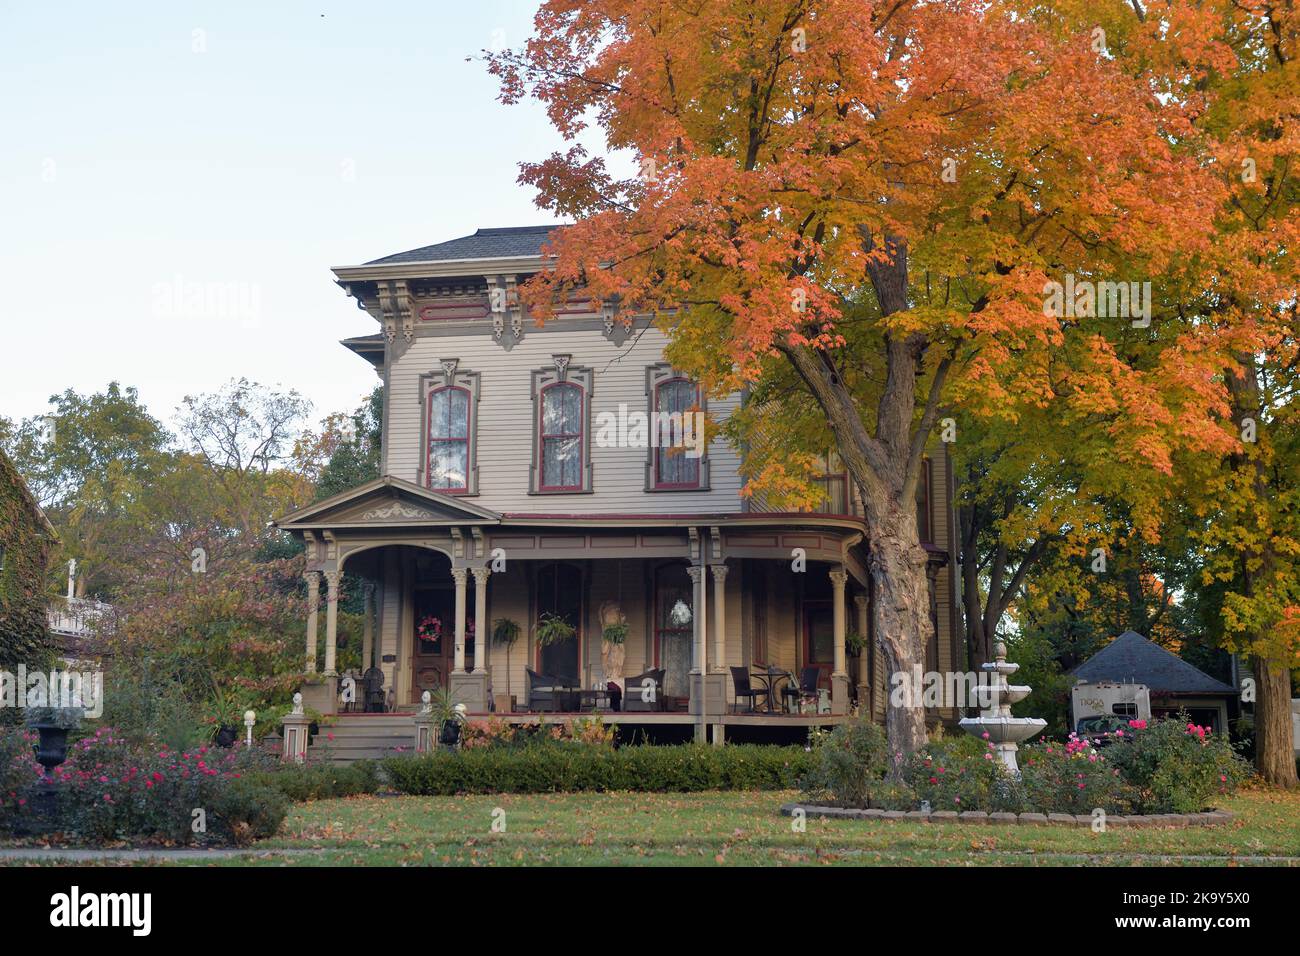 Sycamore, Illinois, Stati Uniti. Una casa d'epoca all'interno del quartiere storico di Sycamore, elencata nel registro nazionale dei luoghi storici degli Stati Uniti. Foto Stock